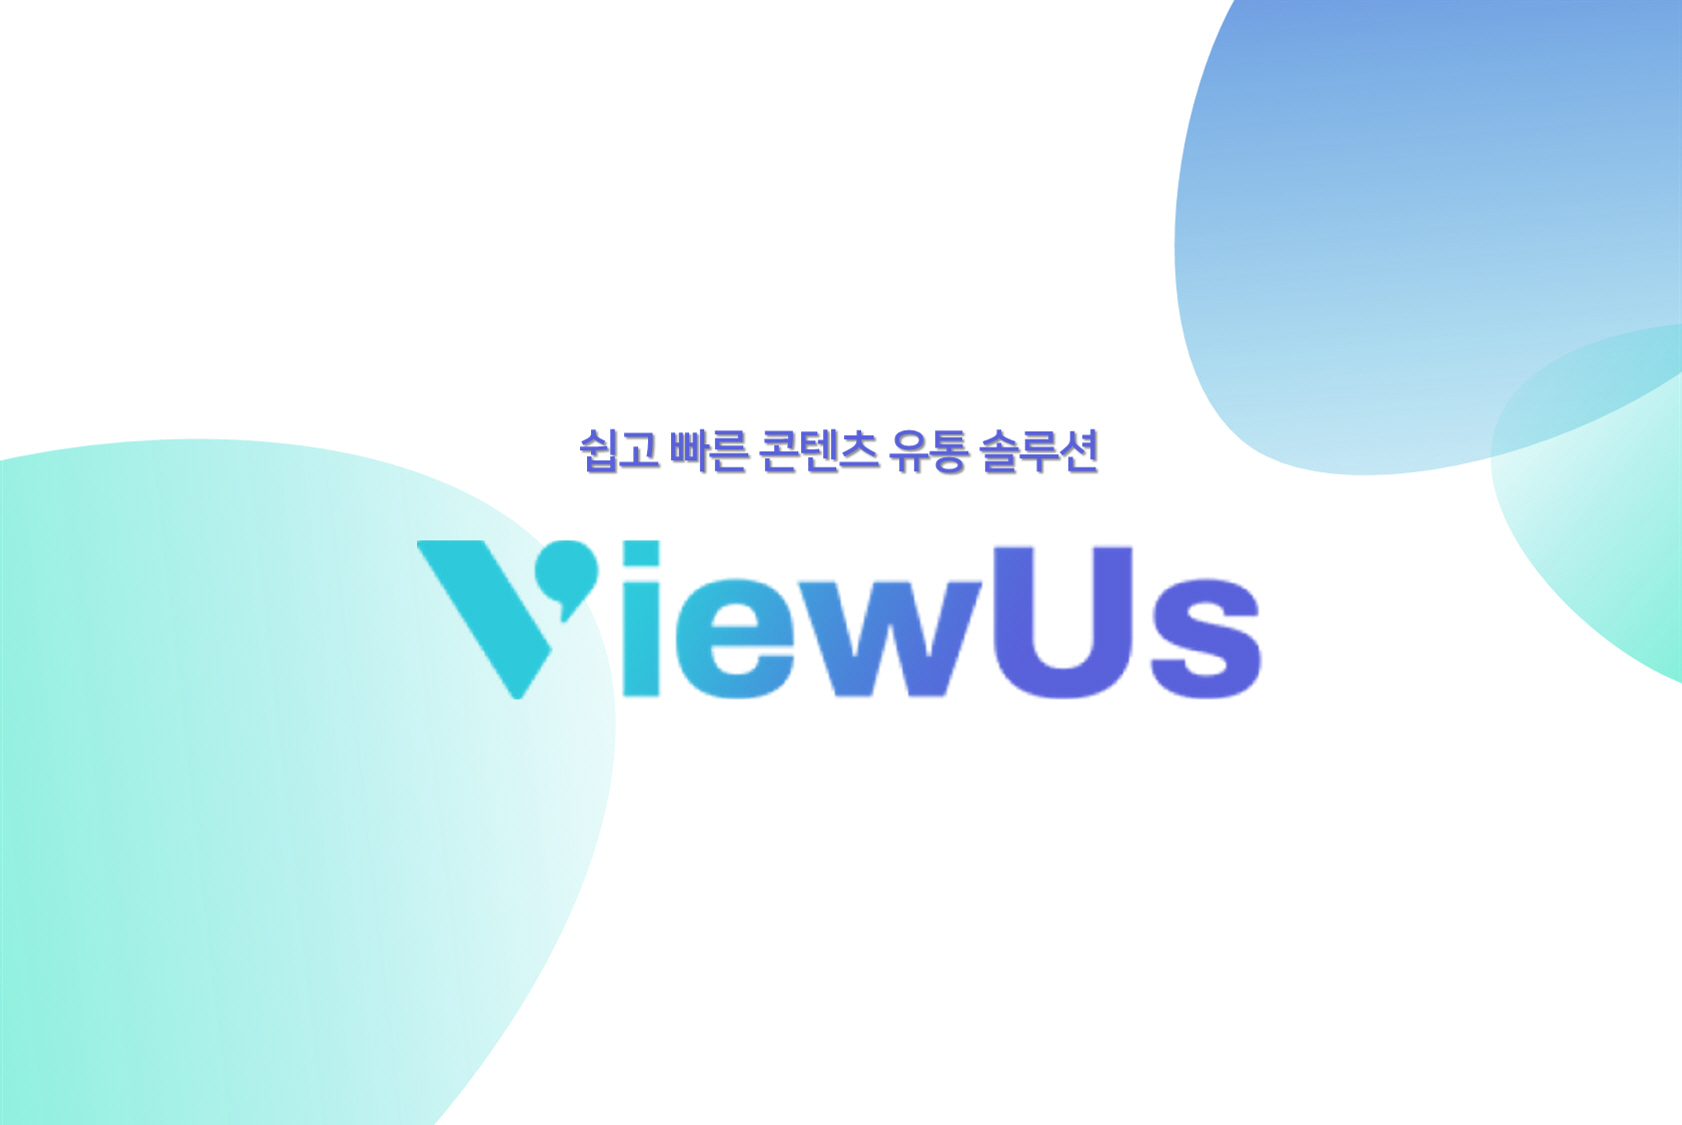 패스트뷰, '마이크로소프트 스타트' 공식 콘텐츠 공급 파트너 선정